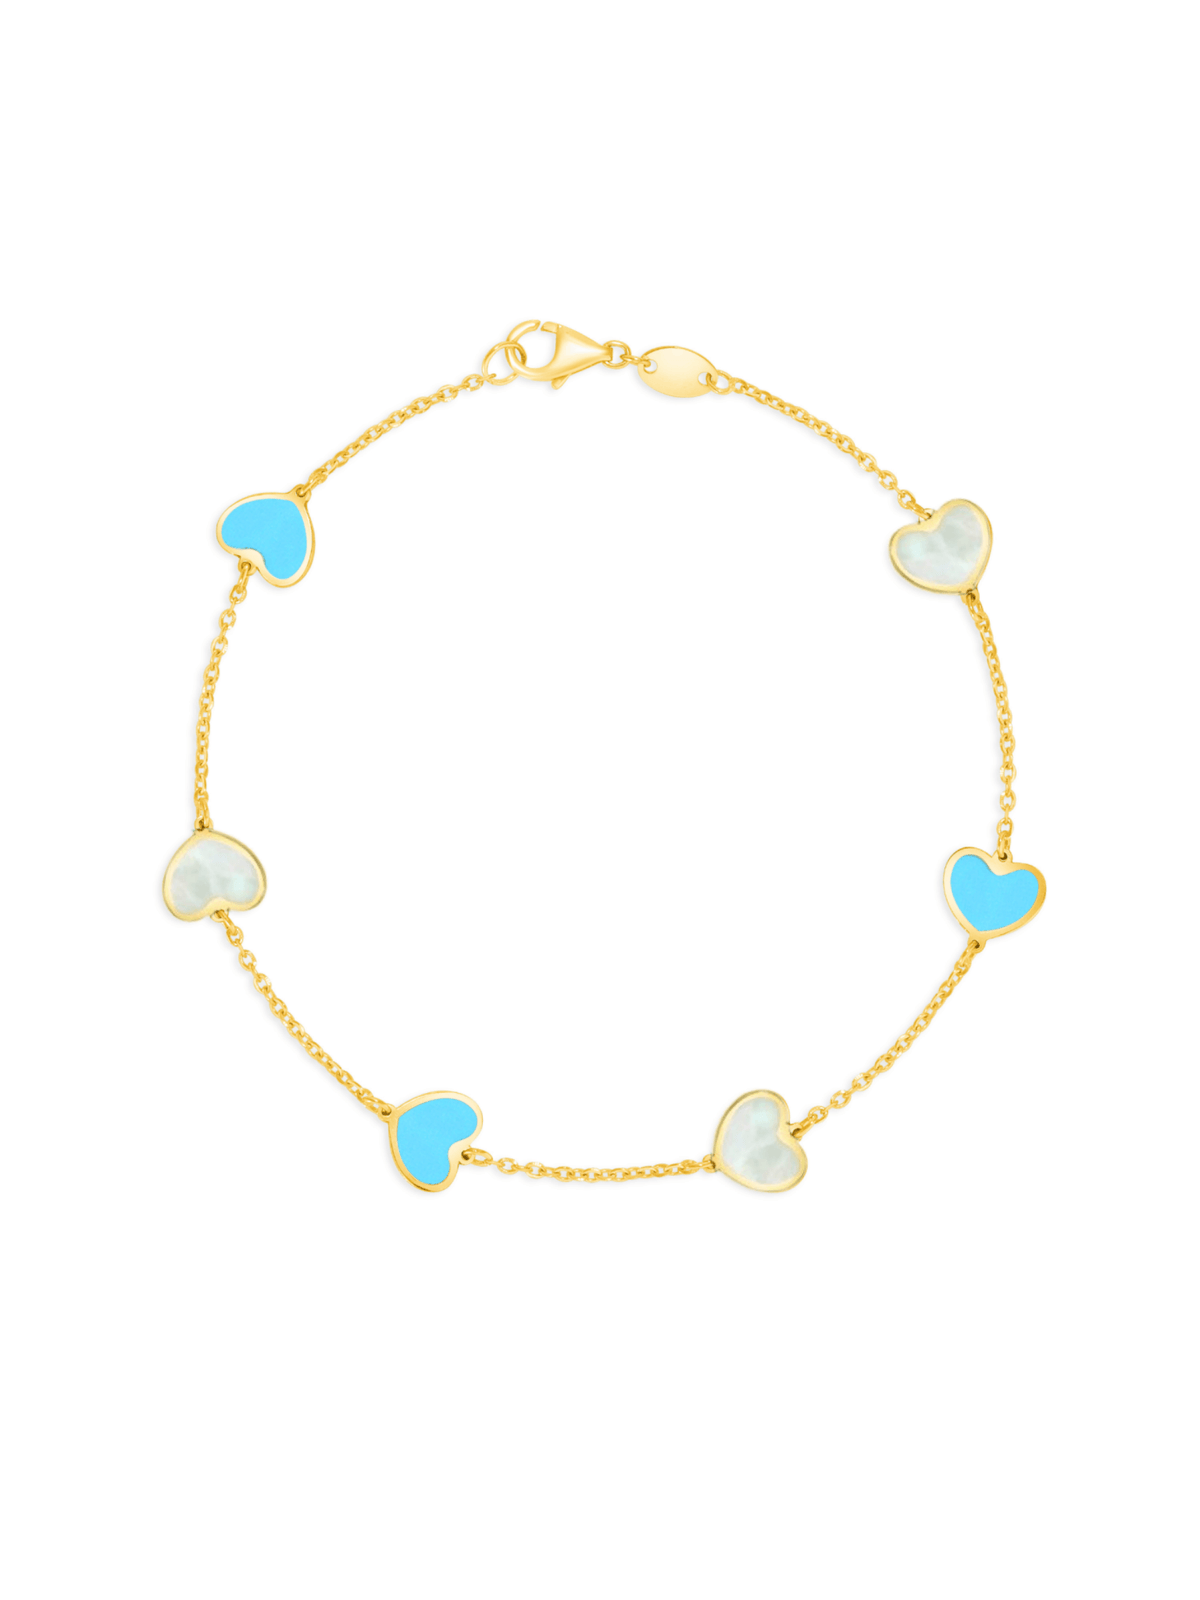 Endless Heart Turquoise and Pearl Bracelet 14K - LeMel